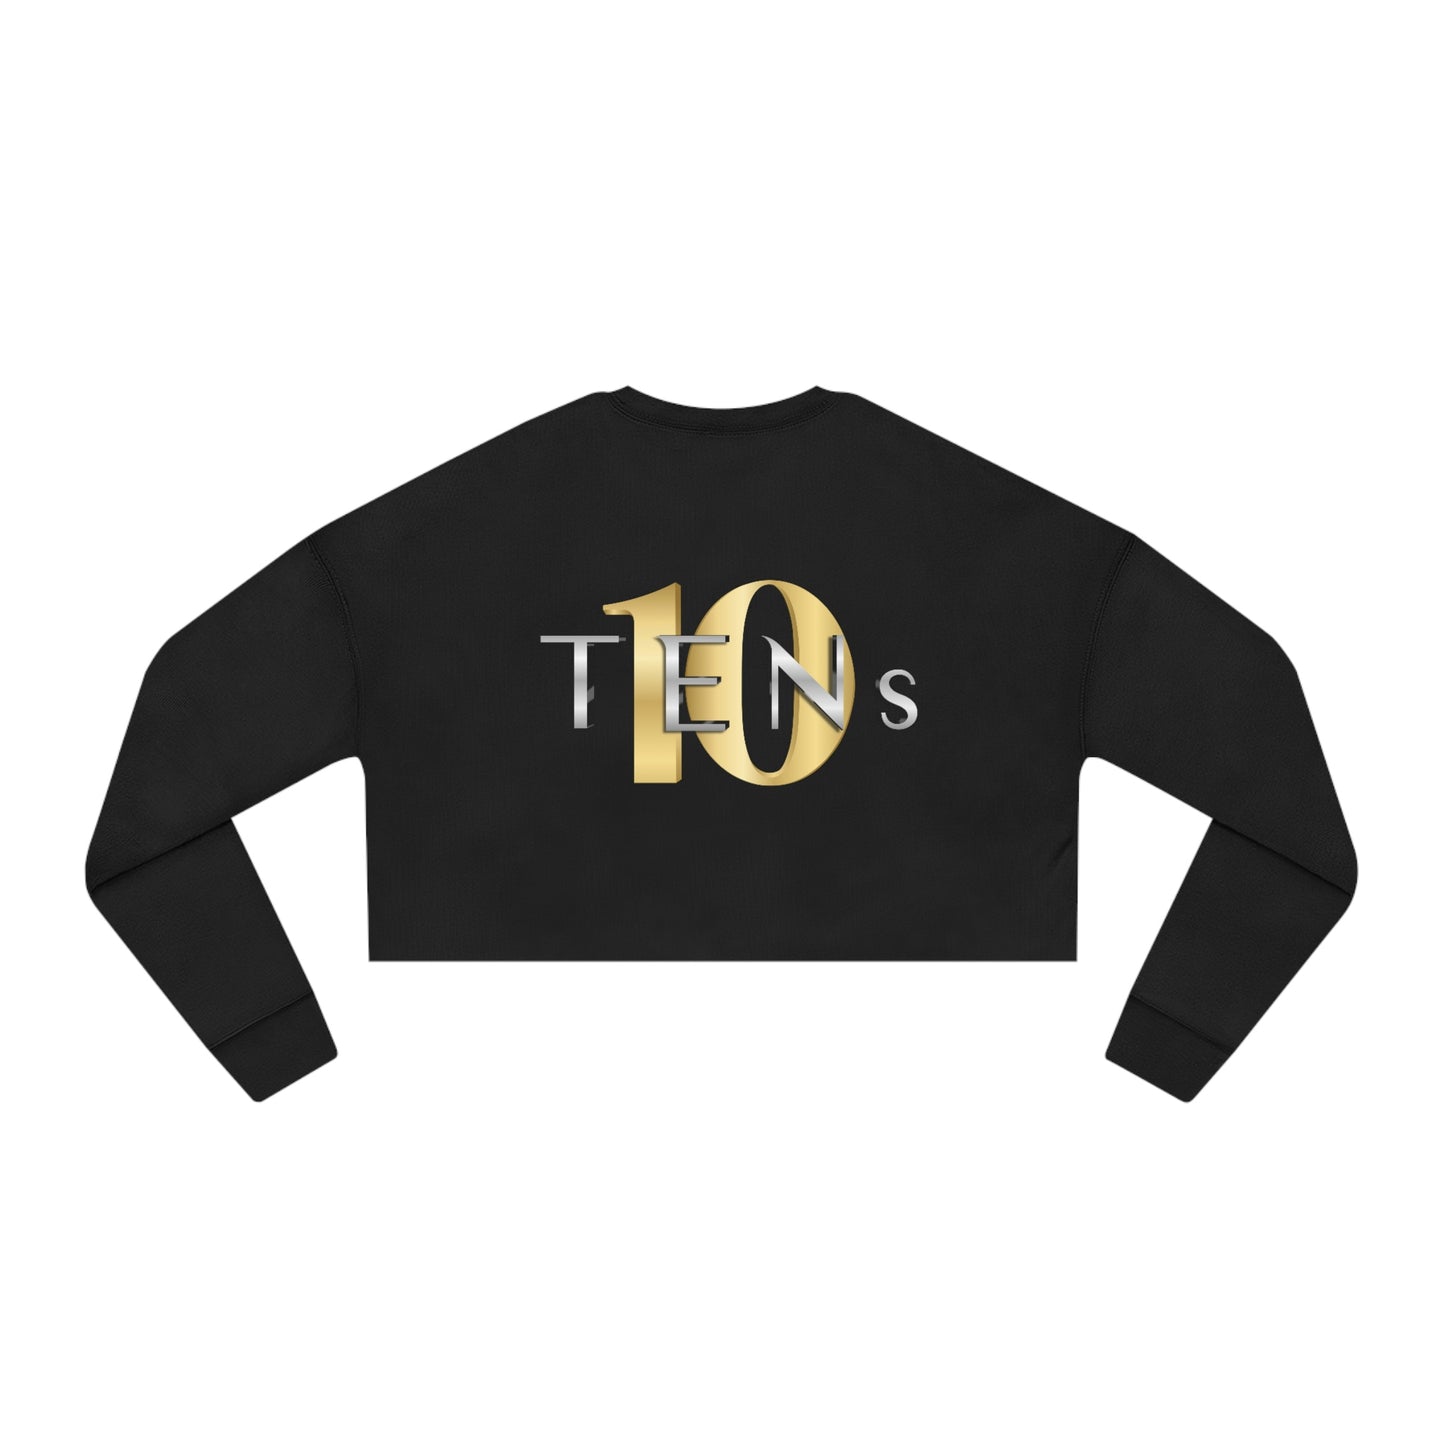 Tens Show Club Women's Cropped Sweatshirt